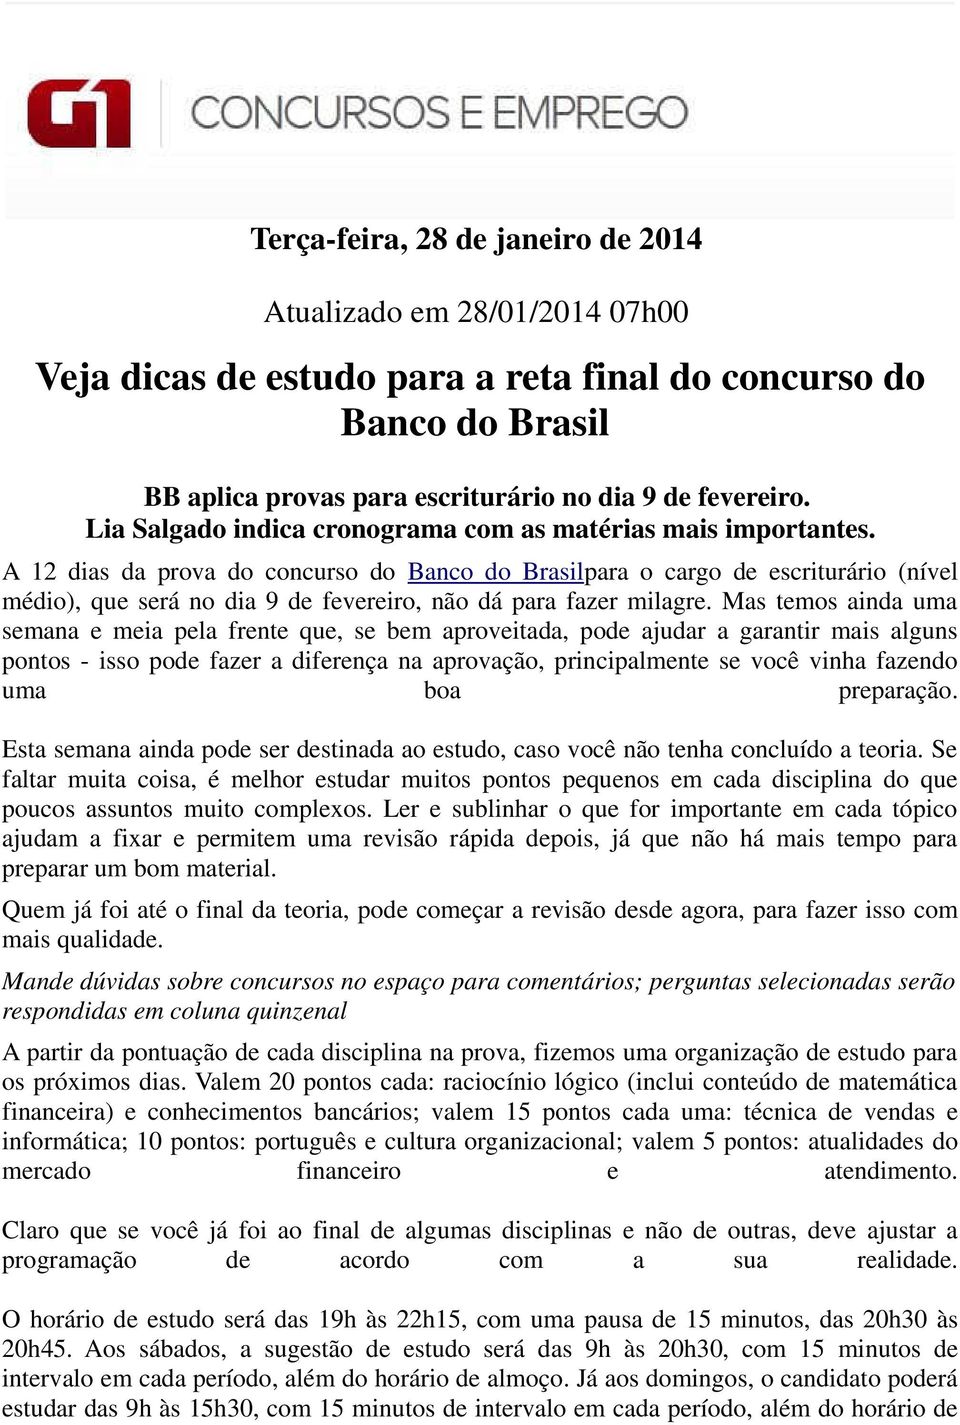 A 12 dias da prova do concurso do Banco do Brasilpara o cargo de escriturário (nível médio), que será no dia 9 de fevereiro, não dá para fazer milagre.